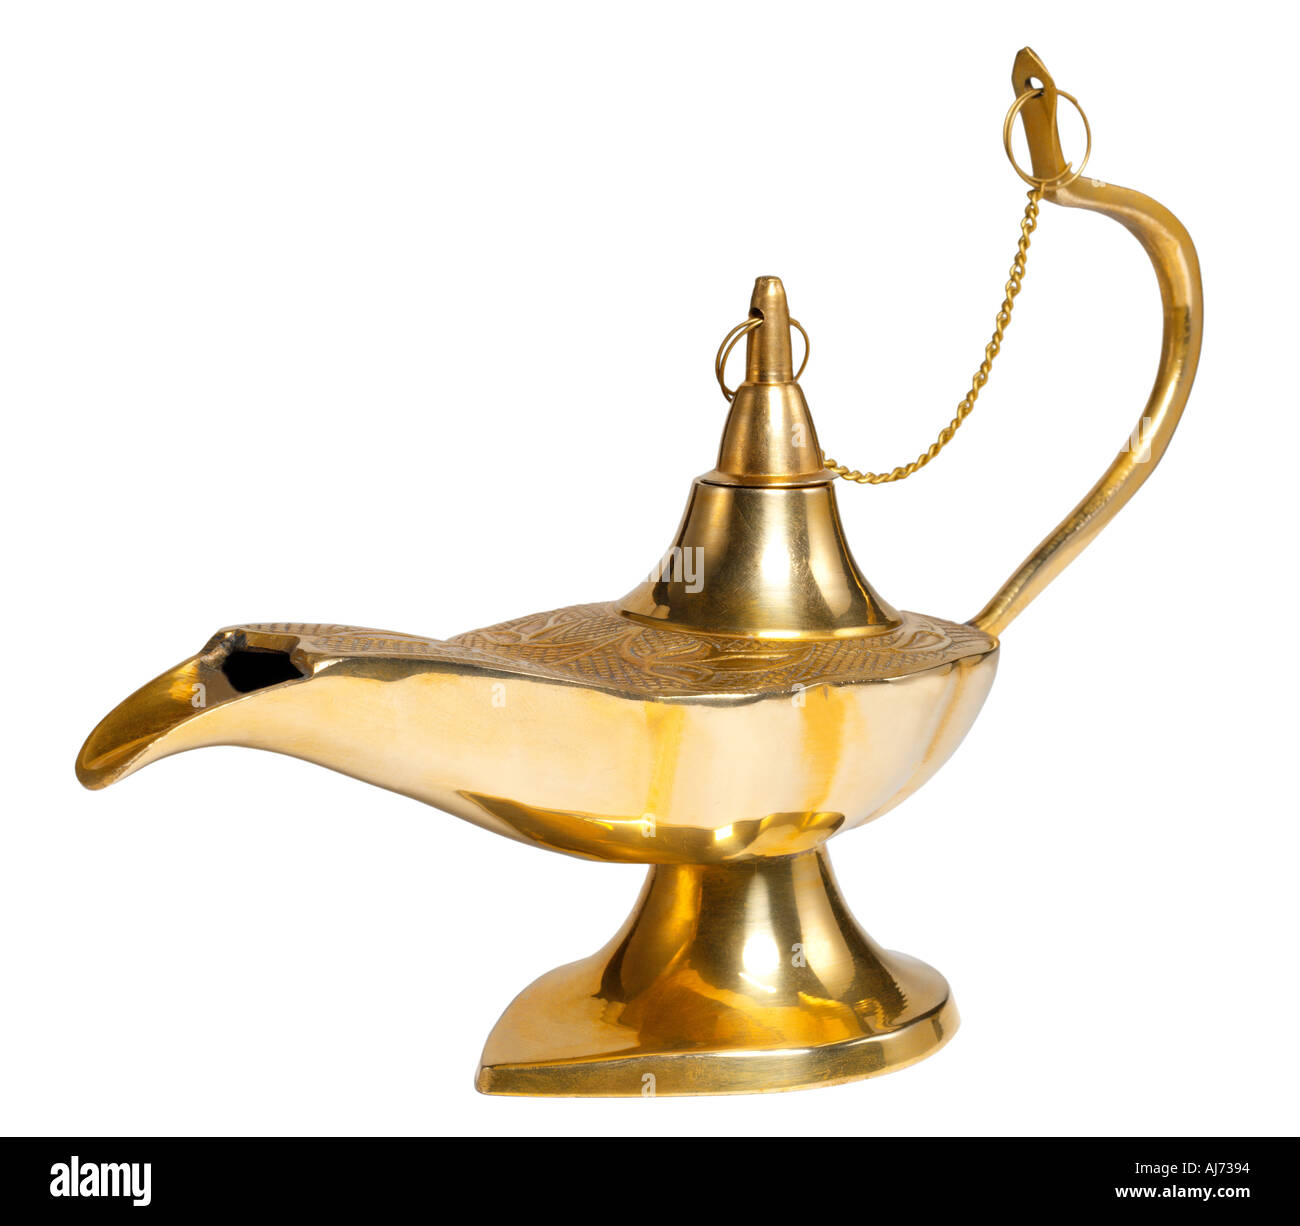 Messing Laterne Genie Messing Lampe magische Konzept konzeptionell magische  Öl Lampe Aladdin Märchen Stockfotografie - Alamy